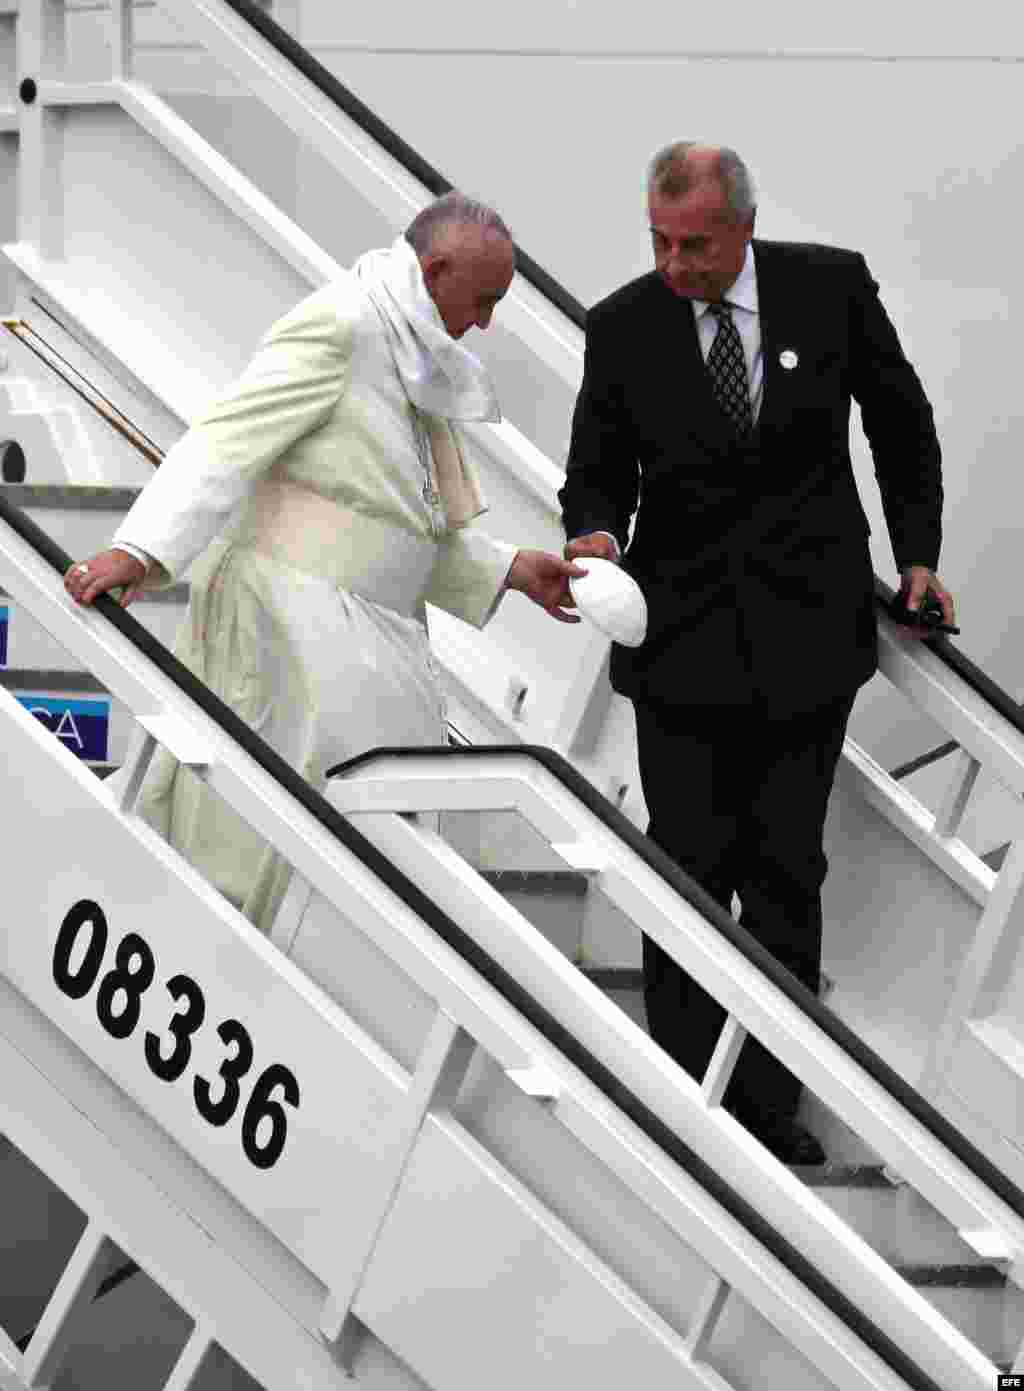 El papa Francisco desciende la escalerilla del avión en el Aeropuerto Internacional José Martí, de La Habana. Fue recibido por las autoridades de la Iglesia y del Gobierno de la isla, en una ceremonia de bienvenida en la que pronunció un discurso que llama a la reconciliación y la paz.